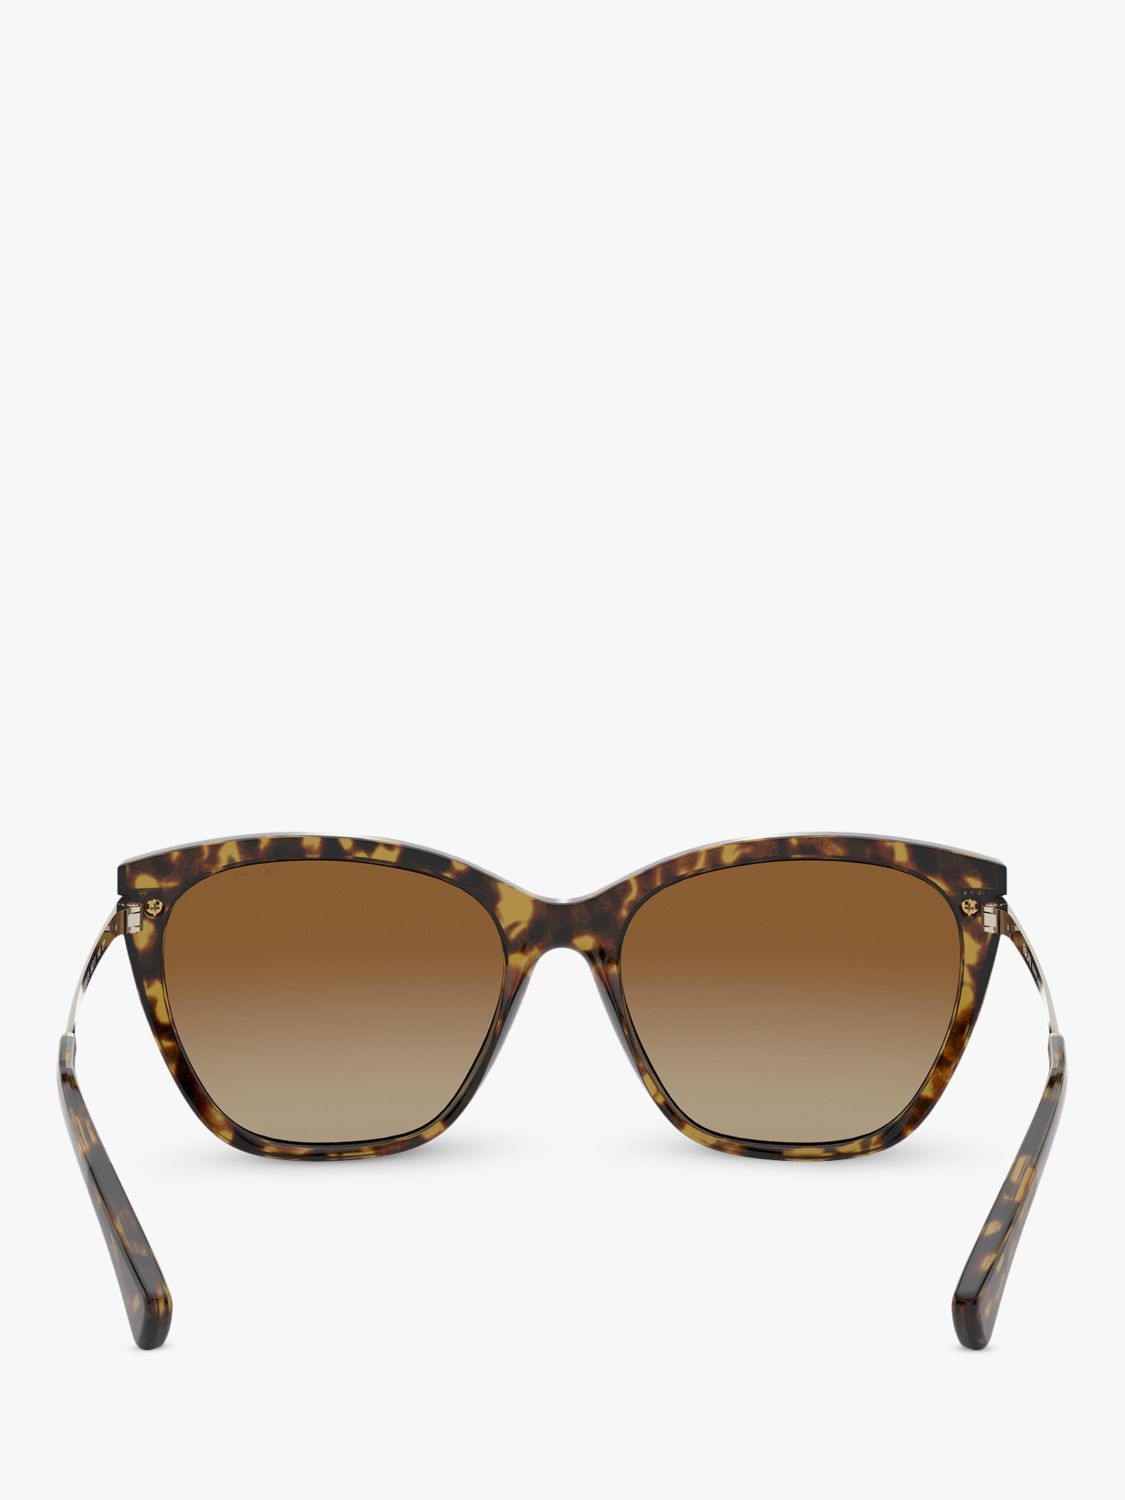 Ralph Lauren RA5267 Women's Butterfly Sunglasses, Havana/Brown Gradient ...